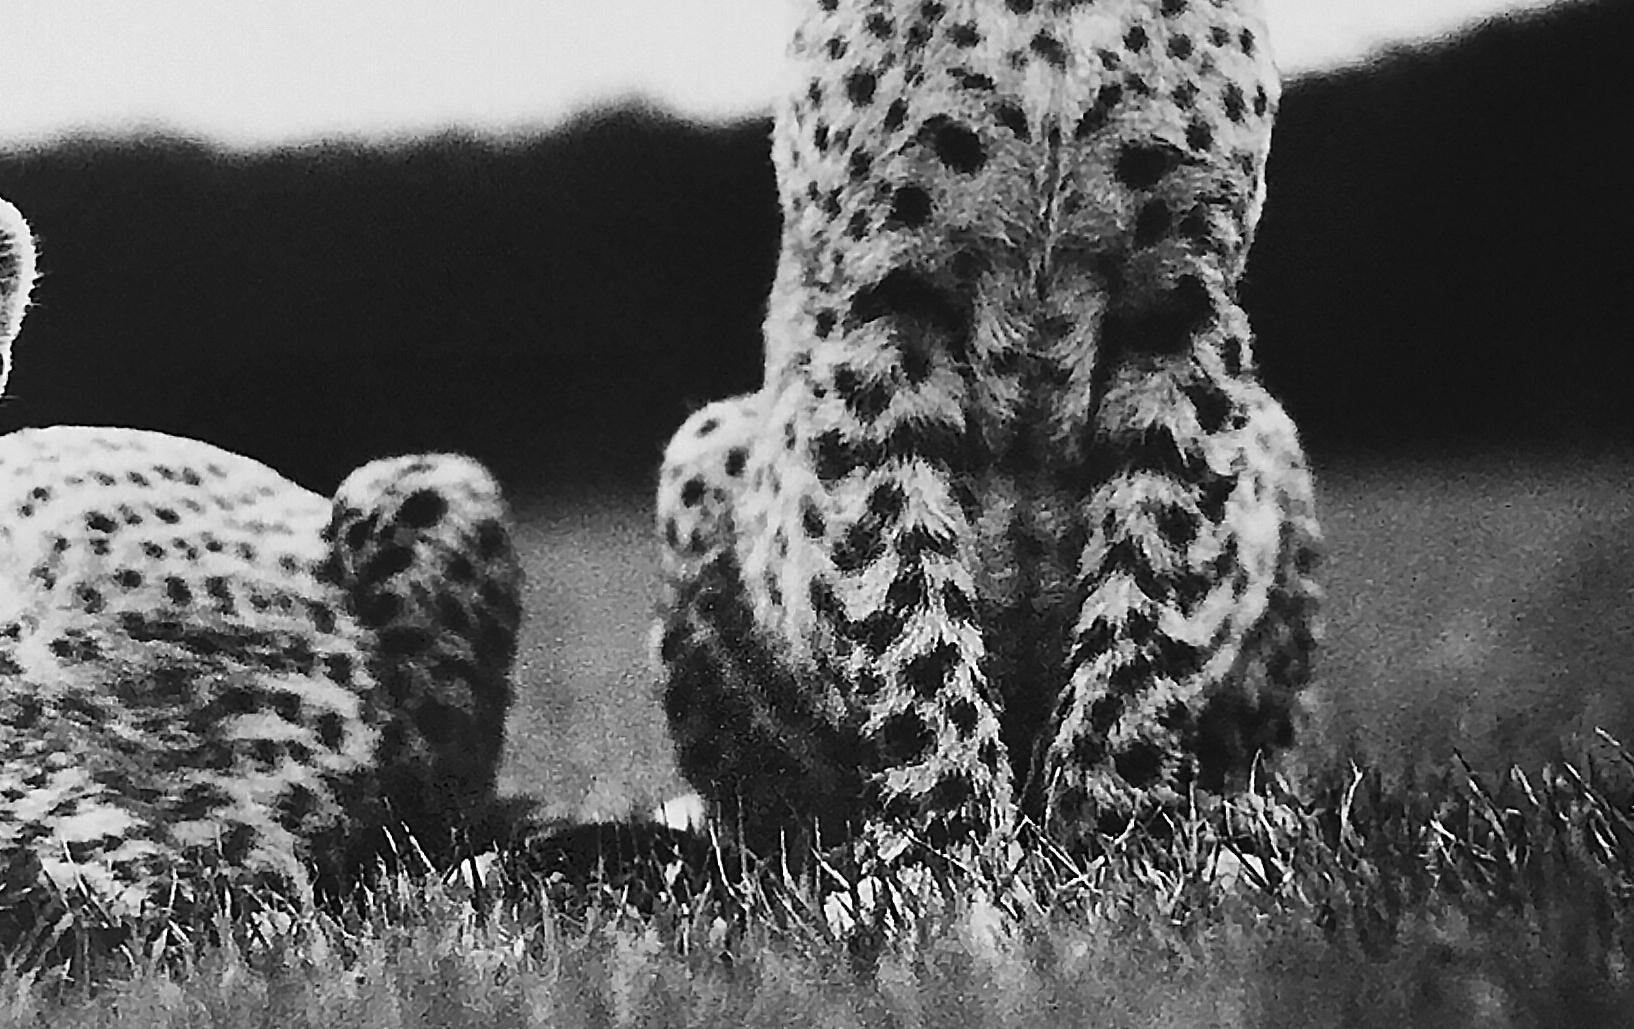 Cheetah Cubs at Mweiga nr Nyeri, Kenya, 1968 - Photograph by Peter Beard